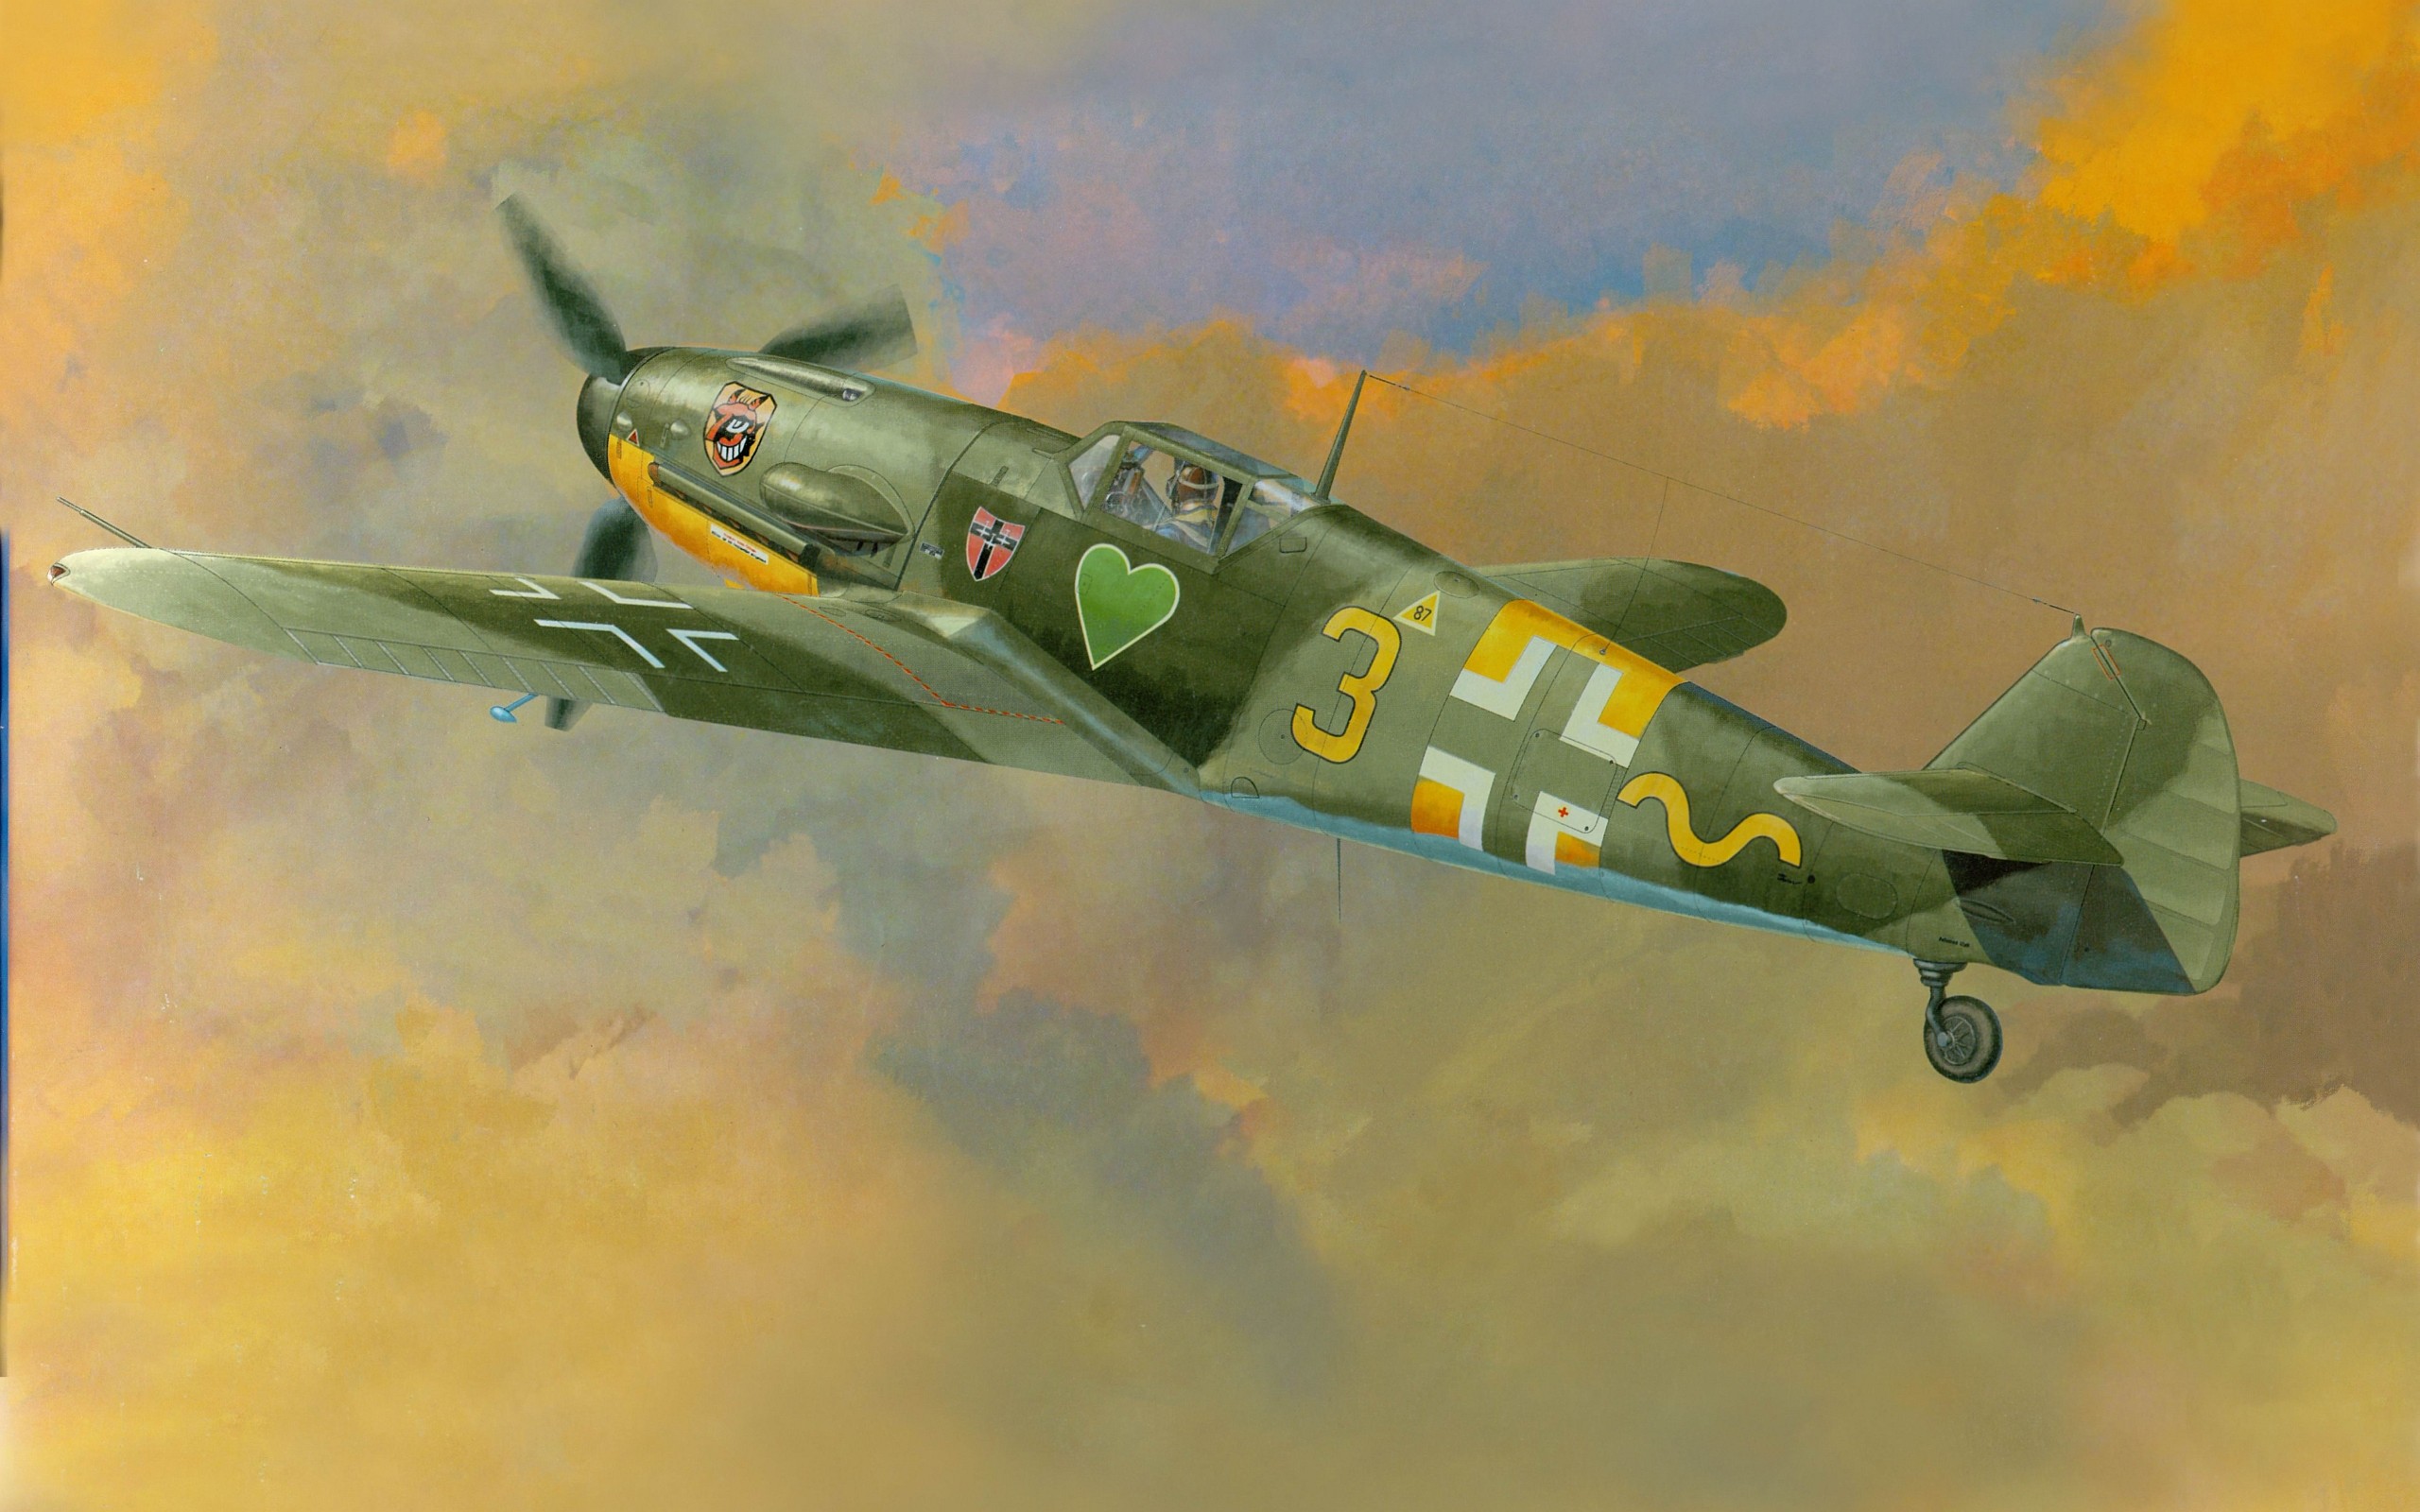 World War Ii Messerschmitt Messerschmitt Bf 109 Luftwaffe Aircraft Military Artwork Military Aircraf 2560x1600